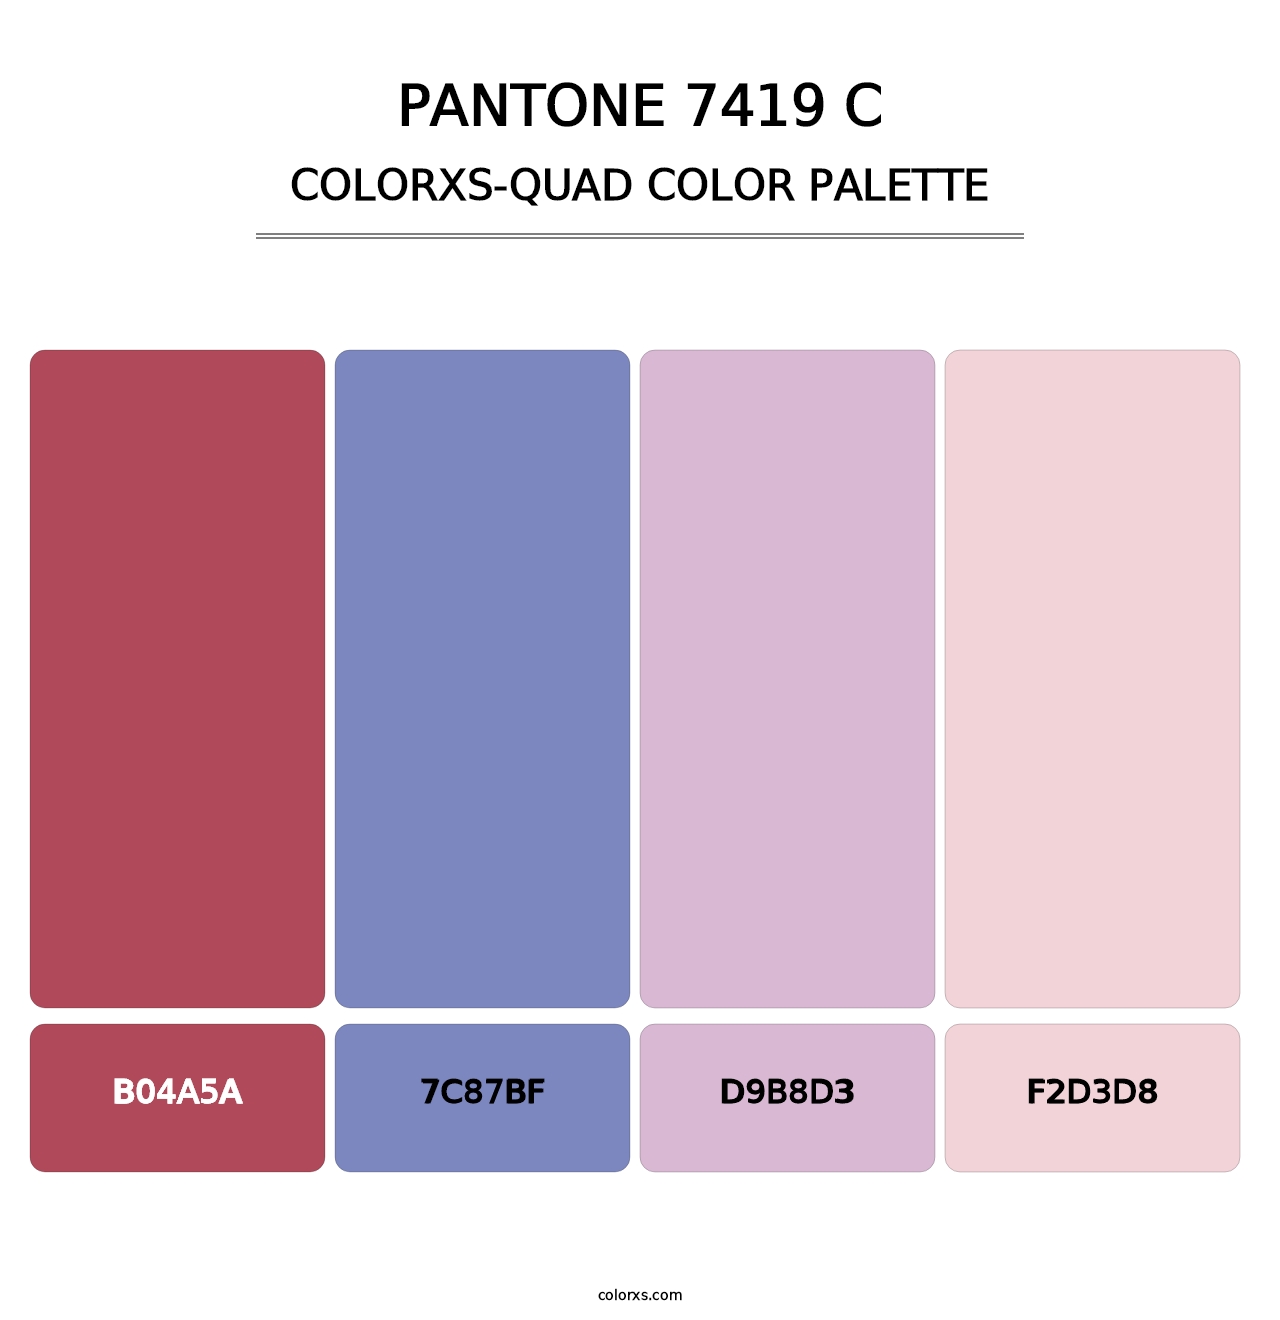 PANTONE 7419 C - Colorxs Quad Palette